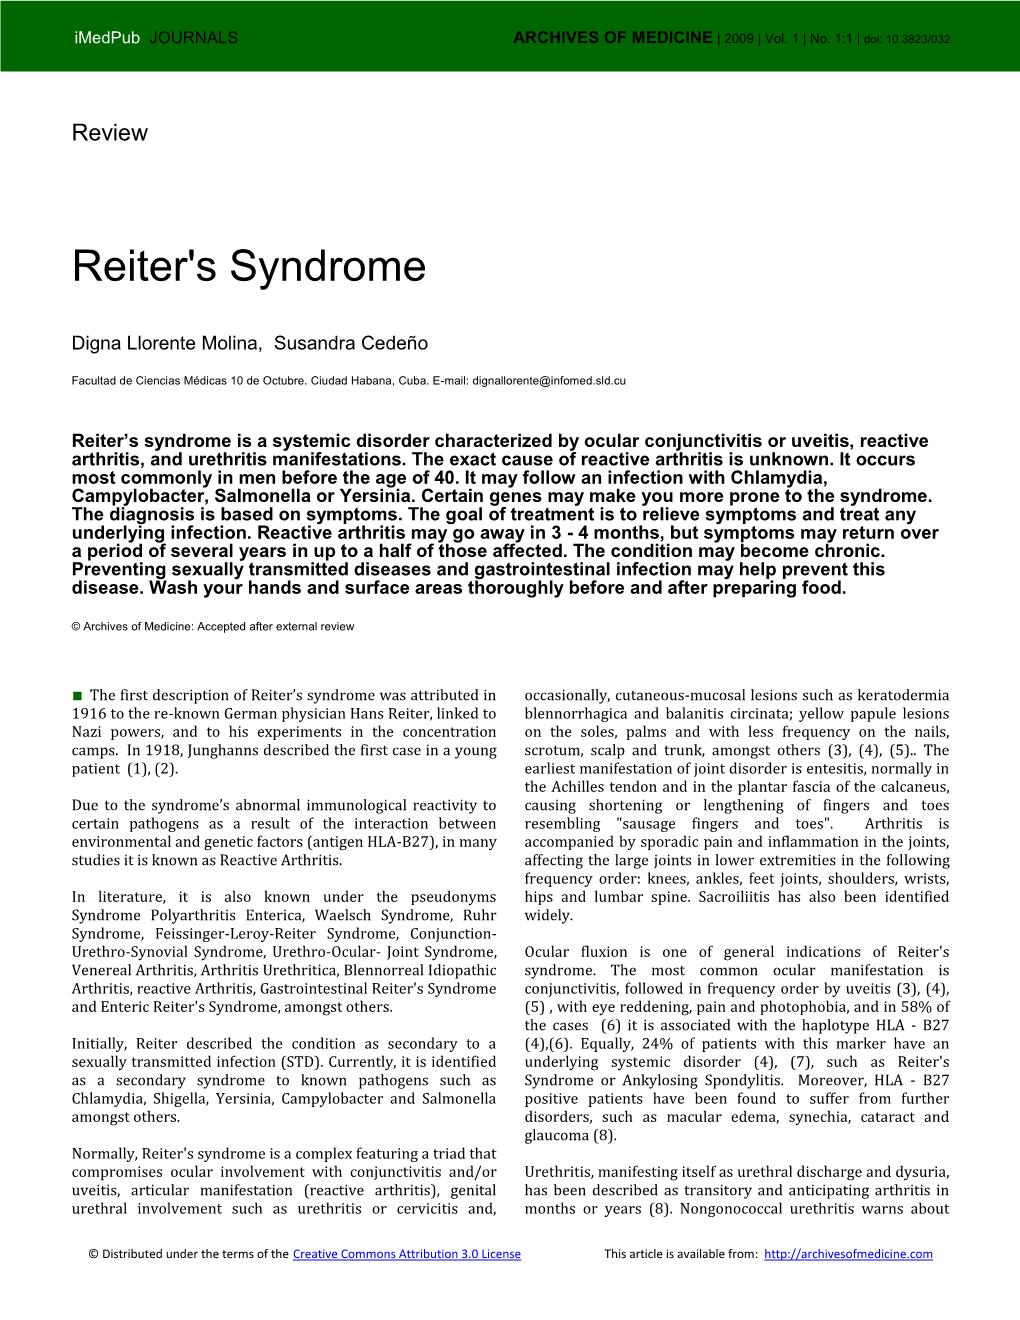 Reiter's Syndrome